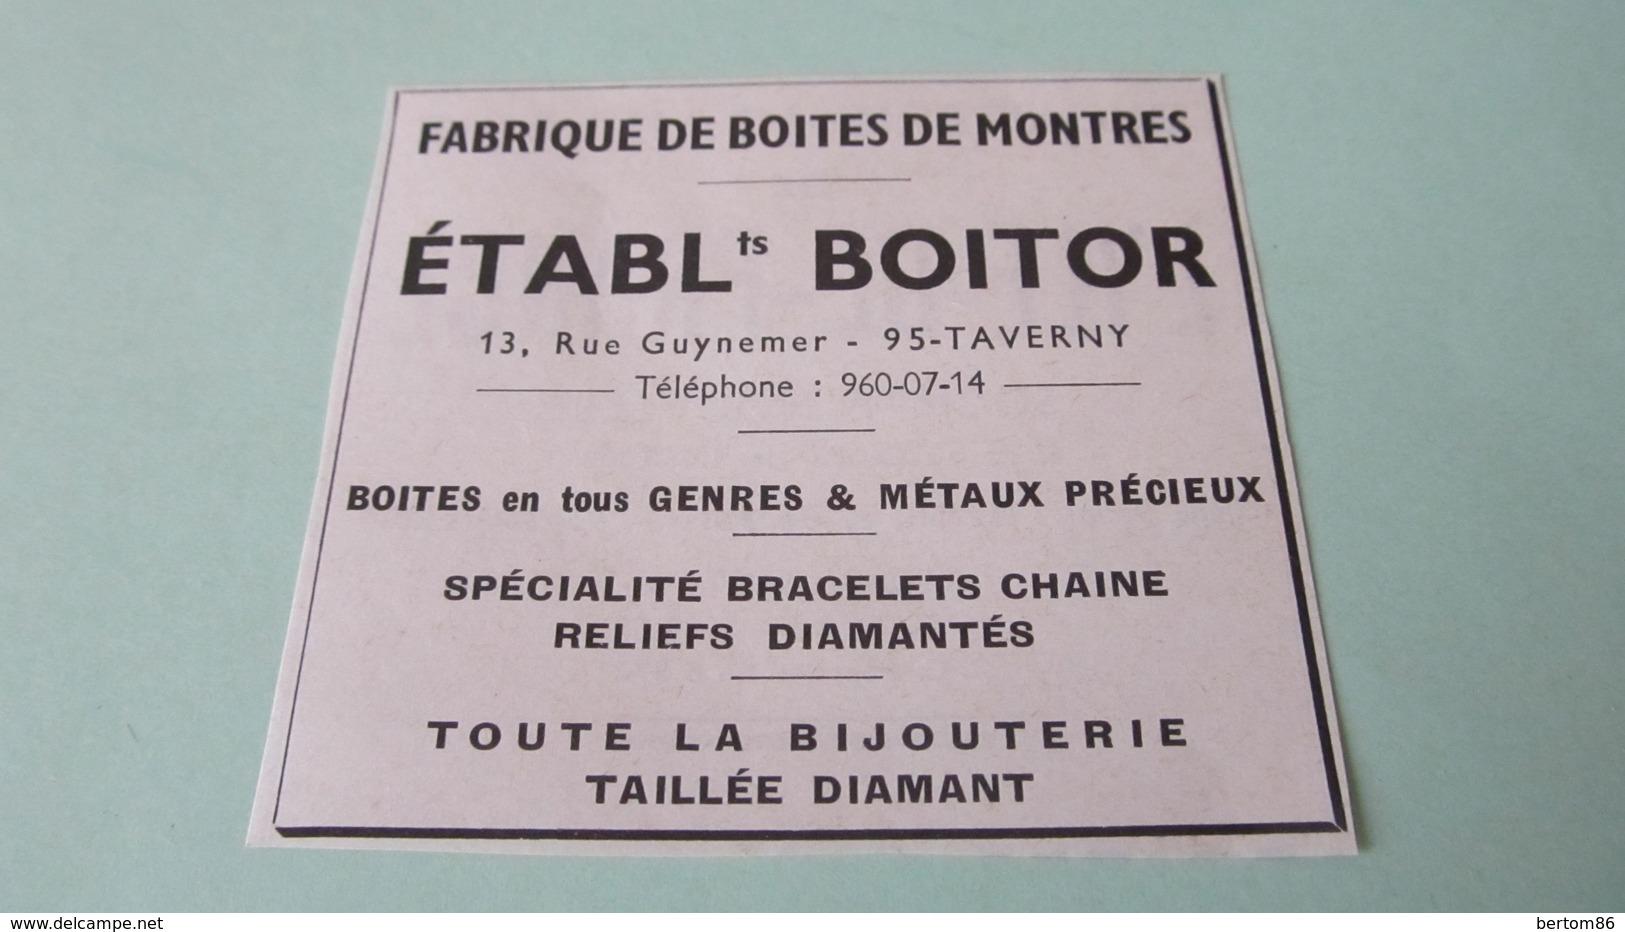 ETABLISSEMENTS BOITOR - FABRIQUE DE BOITES DE MONTRES - TAVERNY - PUBLICITE DE 1968. - Publicités